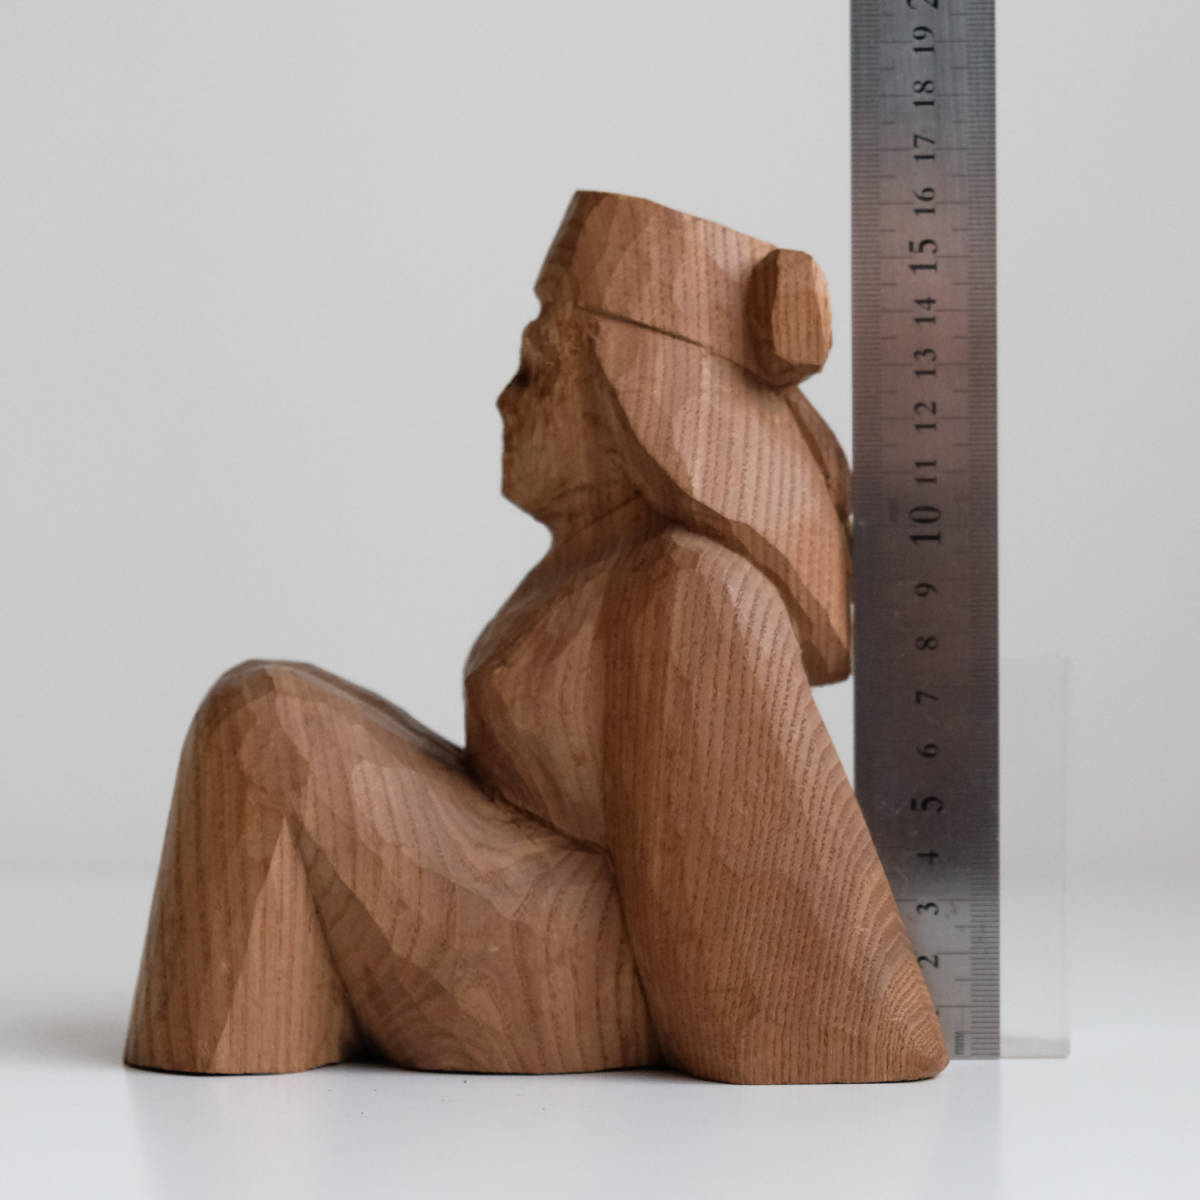 アイヌの木彫り人形 北海道 民藝 置物 木製彫刻_画像2